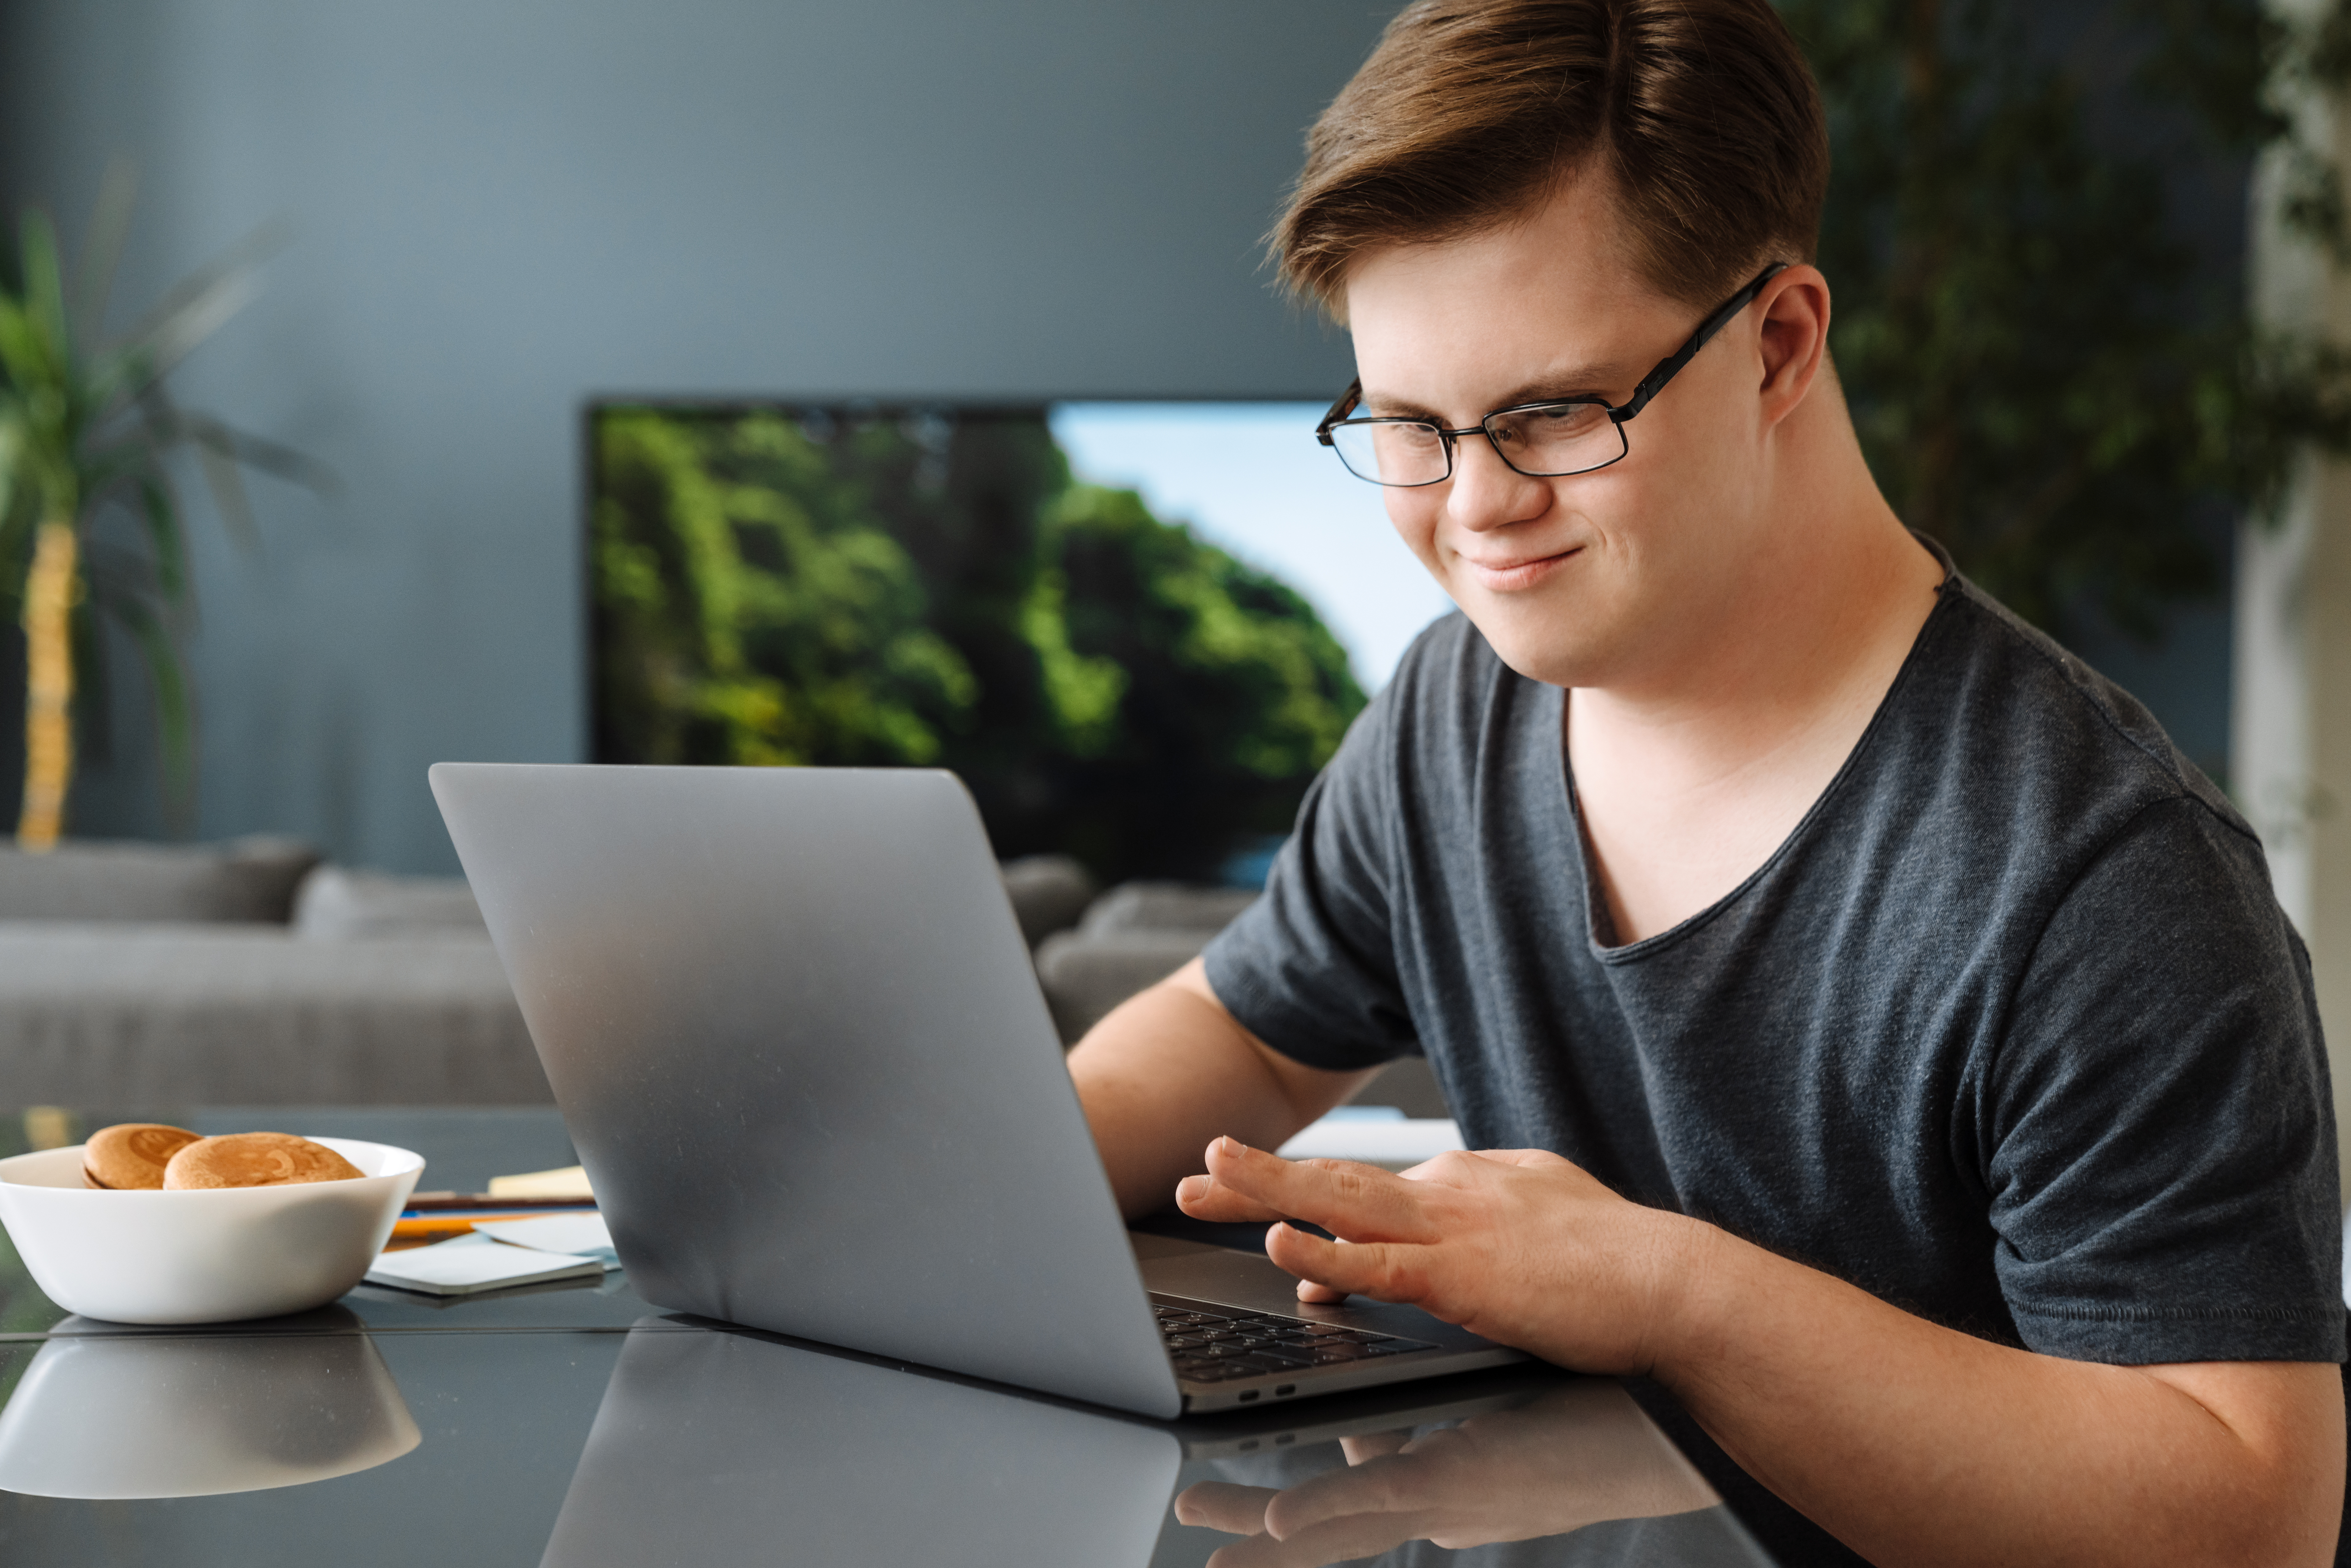 Un homme atteint du syndrome de Down travaillant sur son ordinateur portable. | Source : Shutterstock